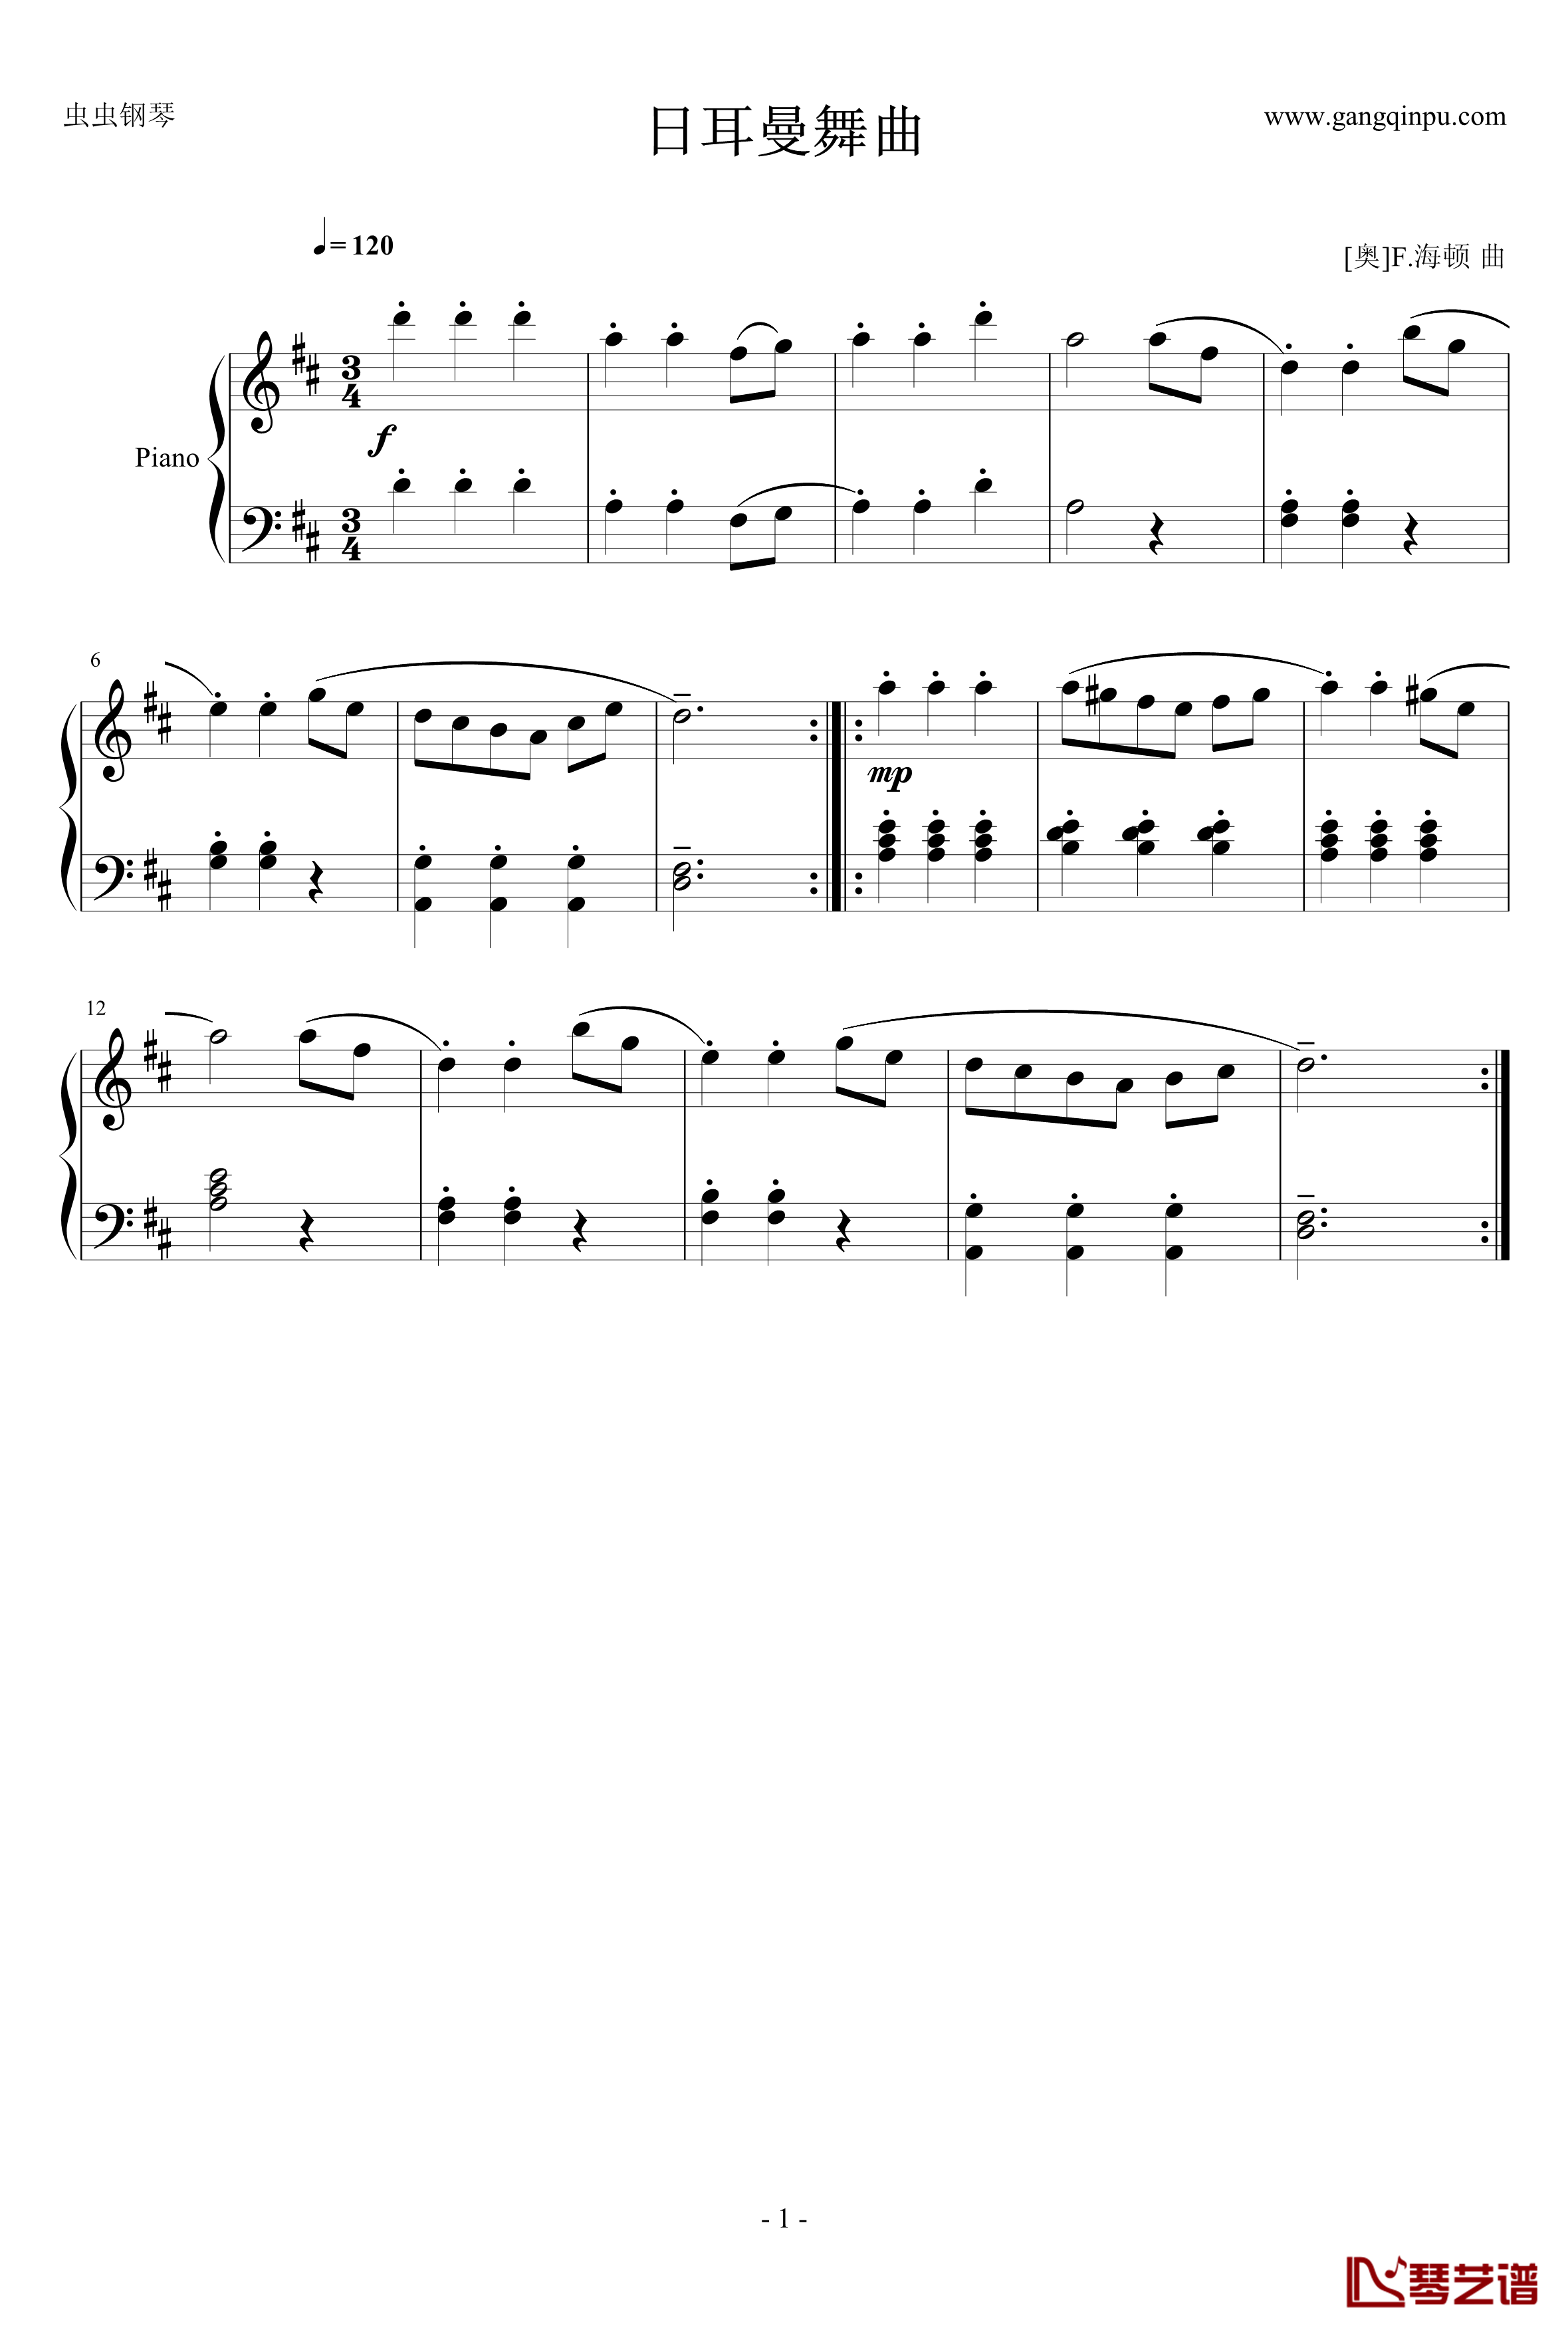 日耳曼舞曲钢琴谱-海顿1